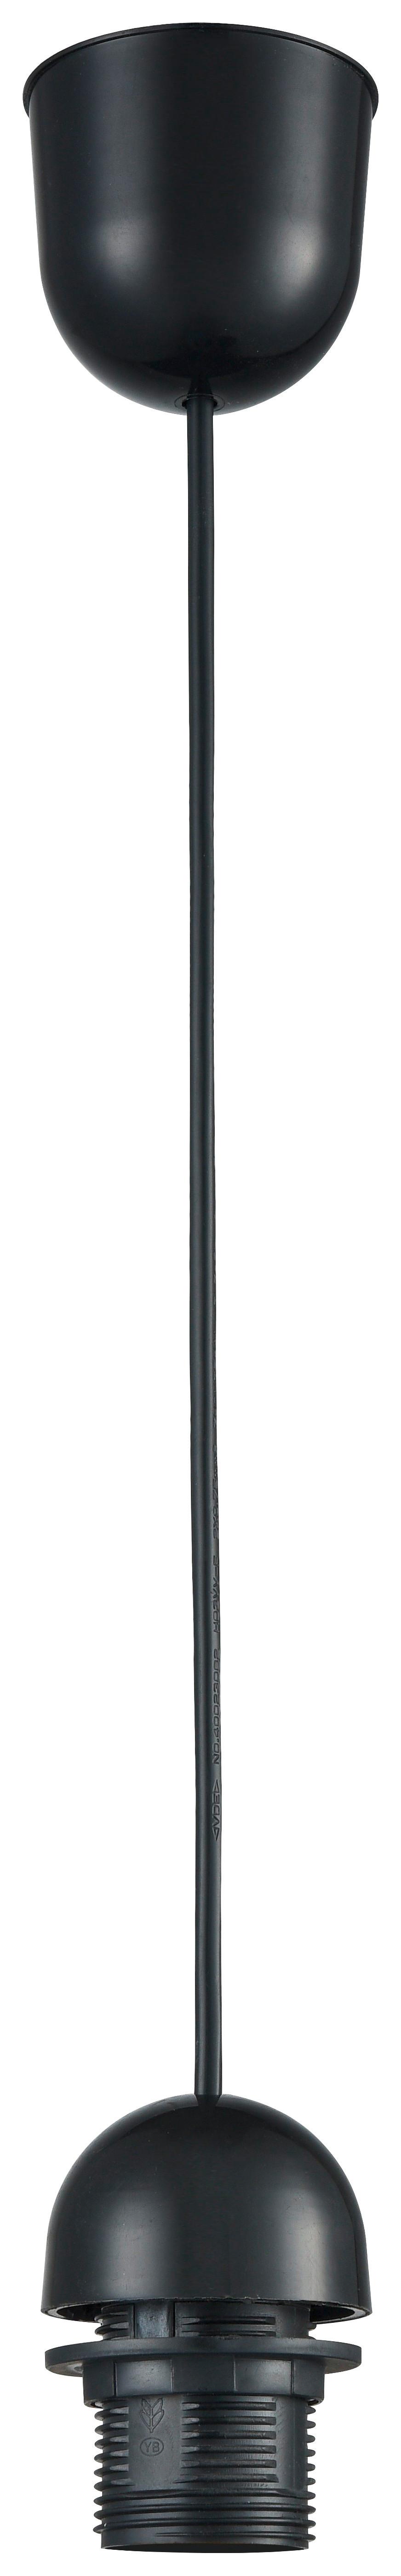 Schnurpendel Anita max. 60 Watt - Schwarz, Kunststoff (150cm) - Modern Living